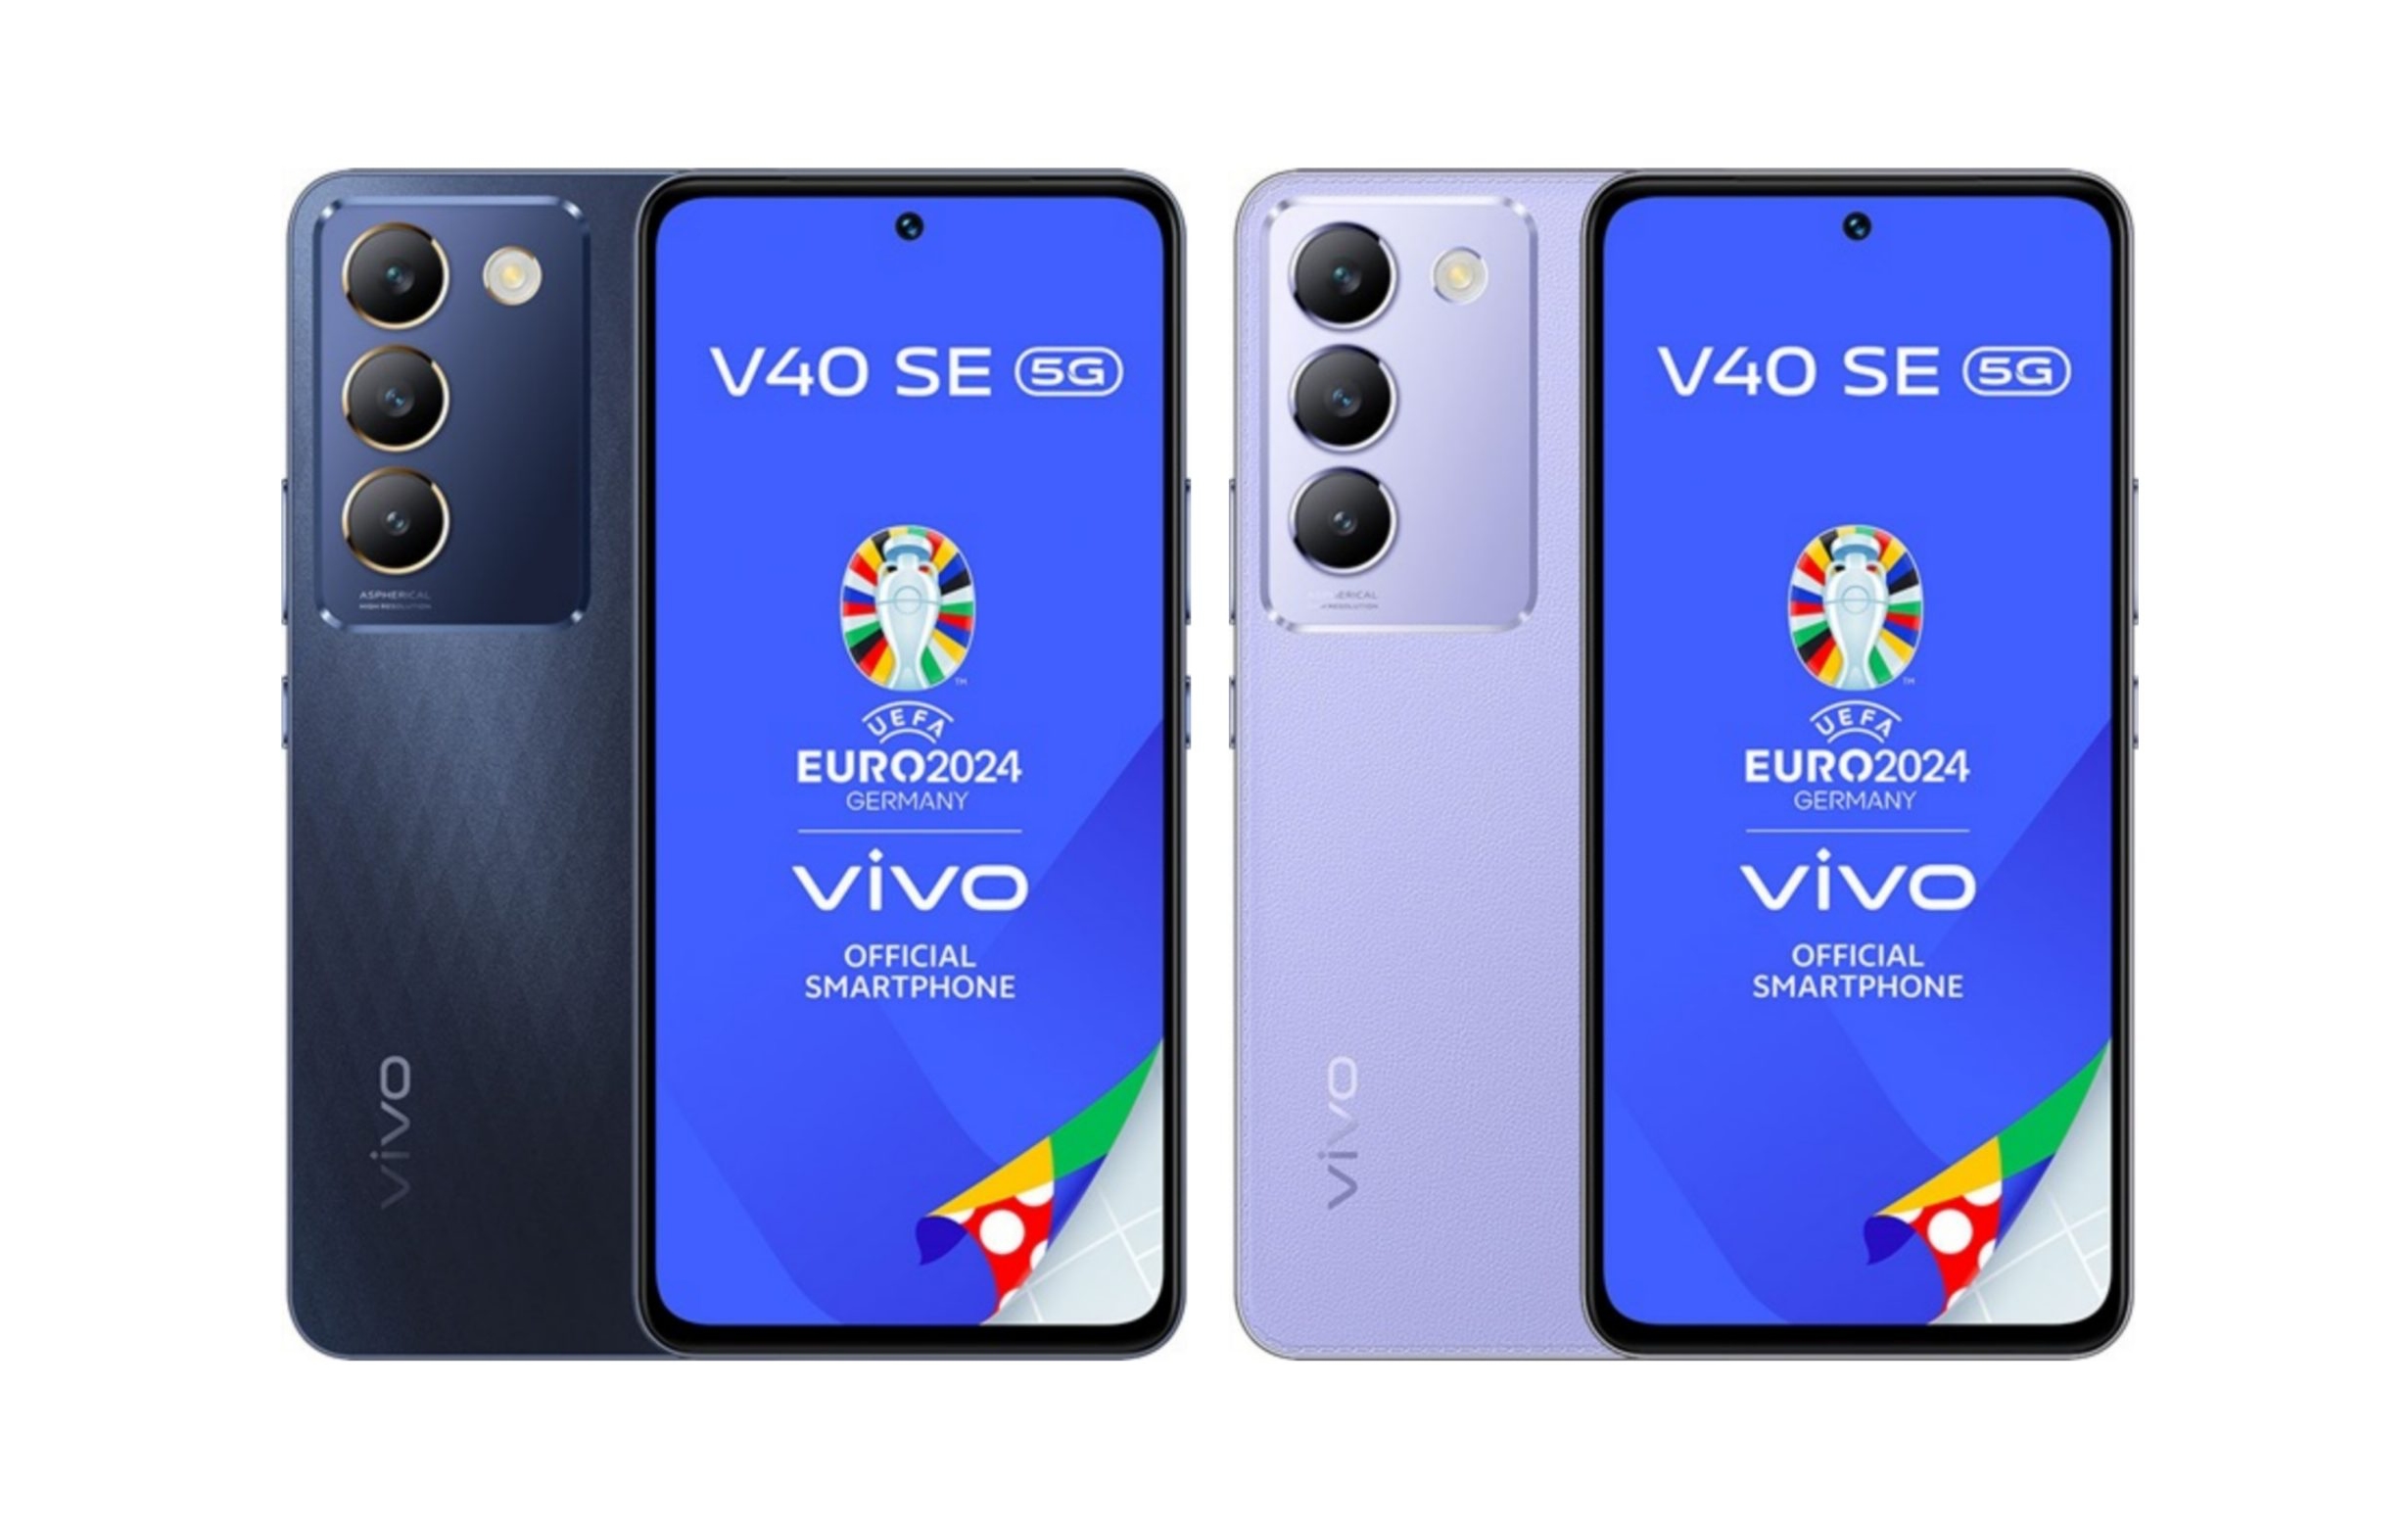 Een insider heeft het uiterlijk, de specificaties en de Europese prijs van de vivo V40 SE smartphone onthuld